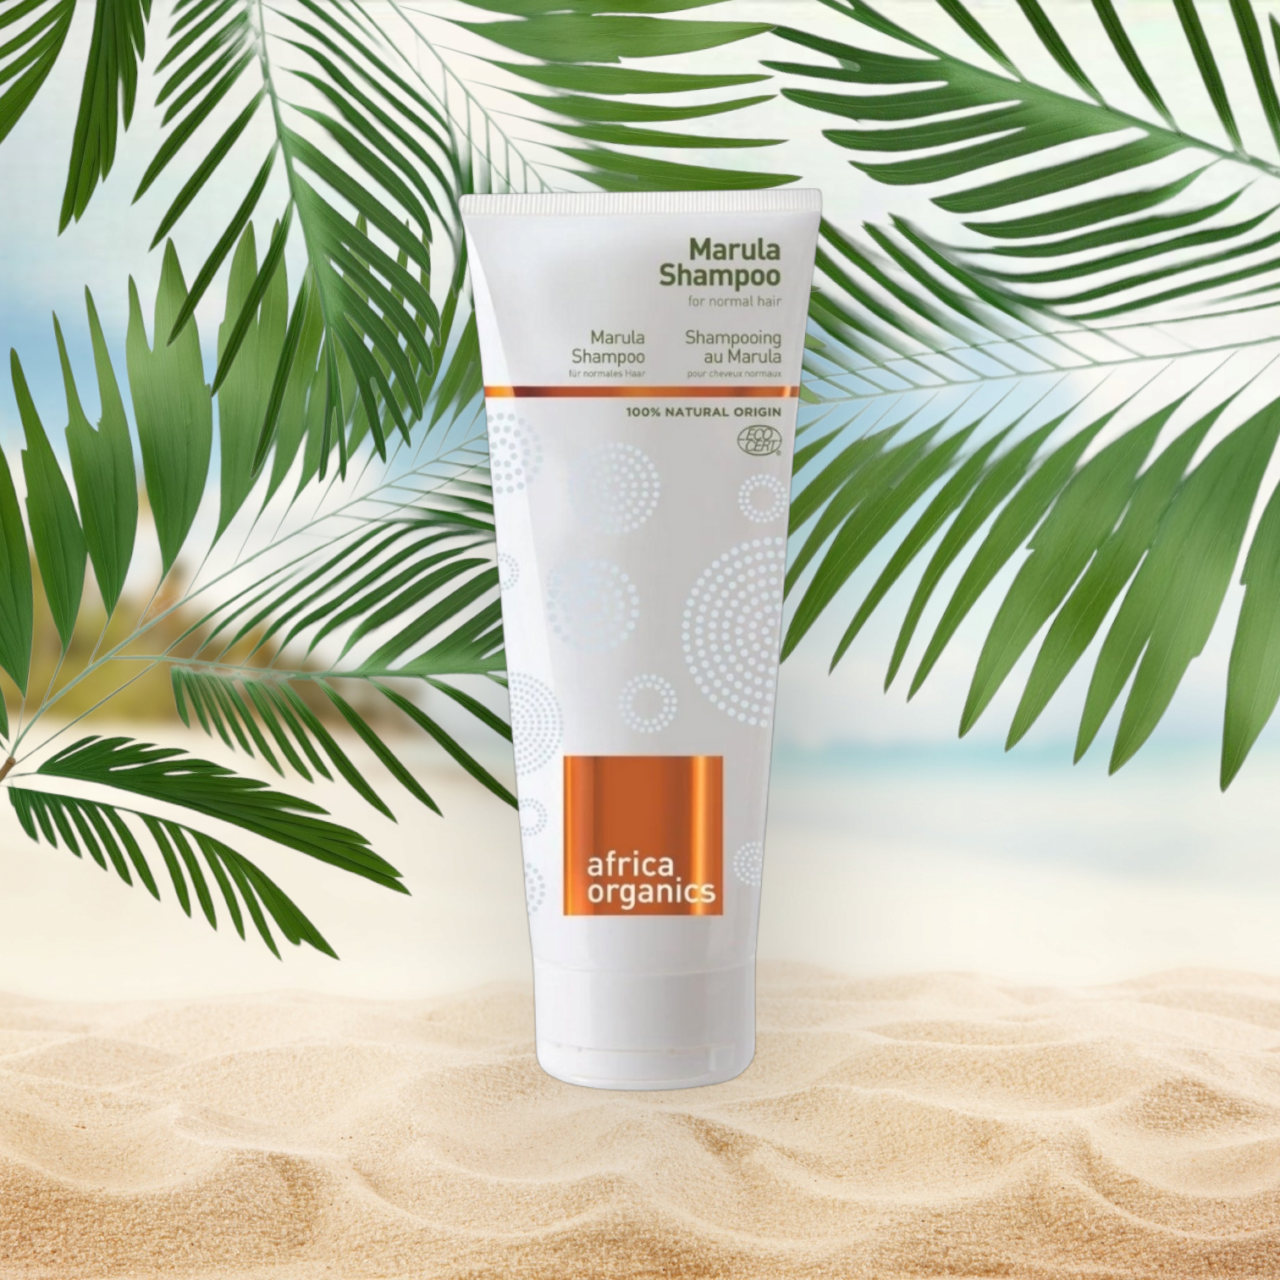 En tube Africa Organics Marula shampoo 210ml på en strand med palmeblade.